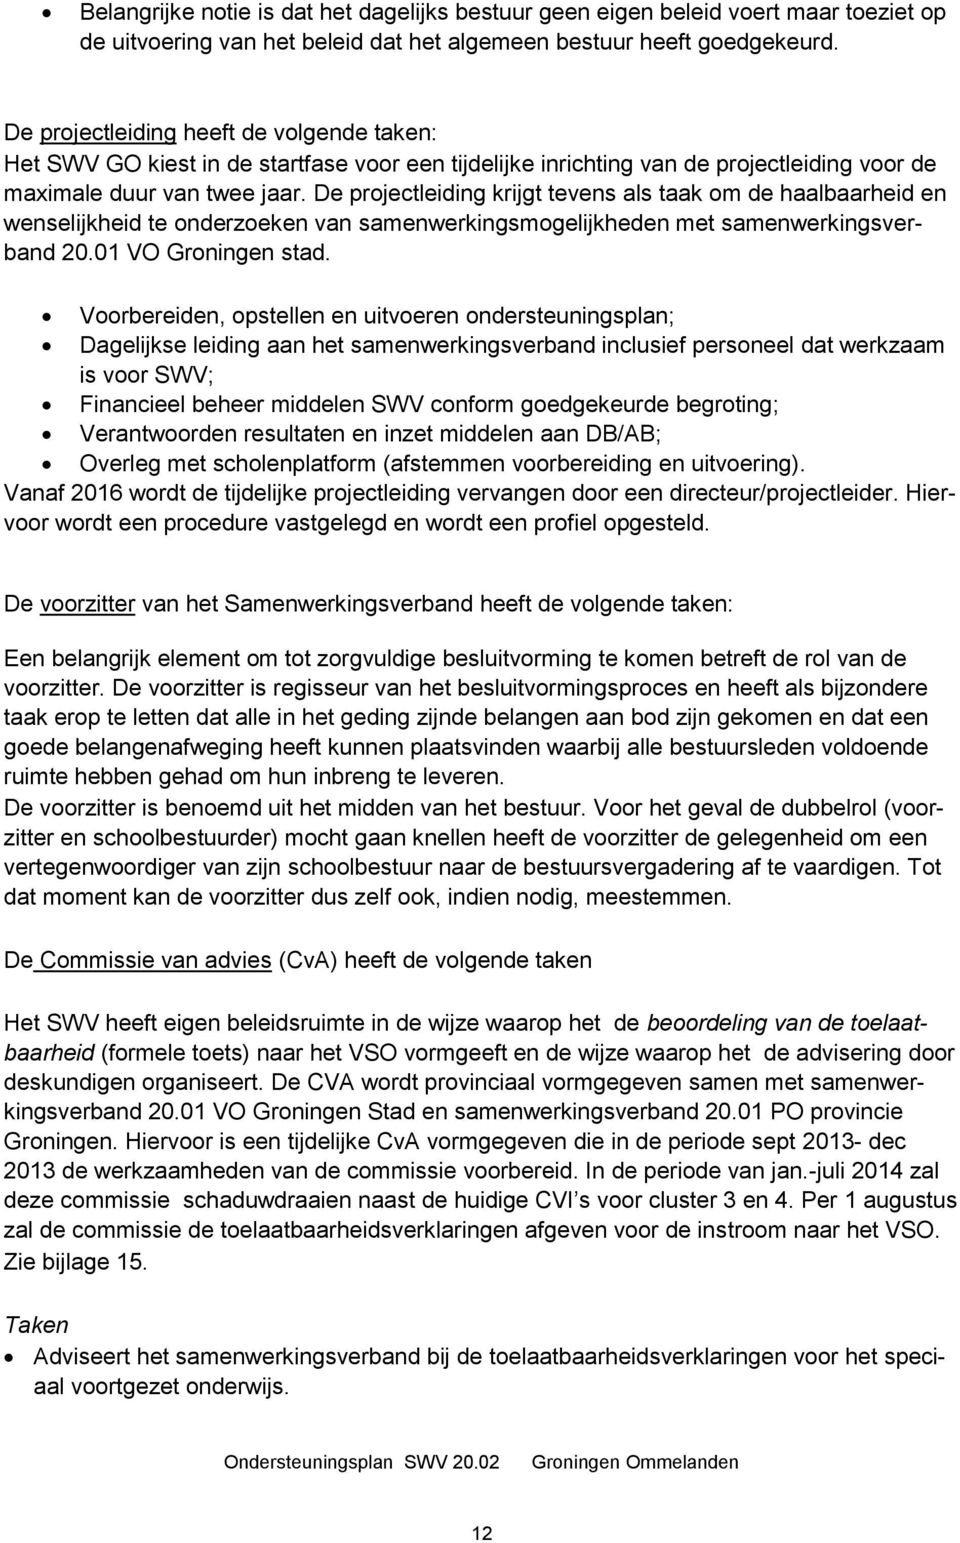 De projectleiding krijgt tevens als taak om de haalbaarheid en wenselijkheid te onderzoeken van samenwerkingsmogelijkheden met samenwerkingsverband 20.01 VO Groningen stad.